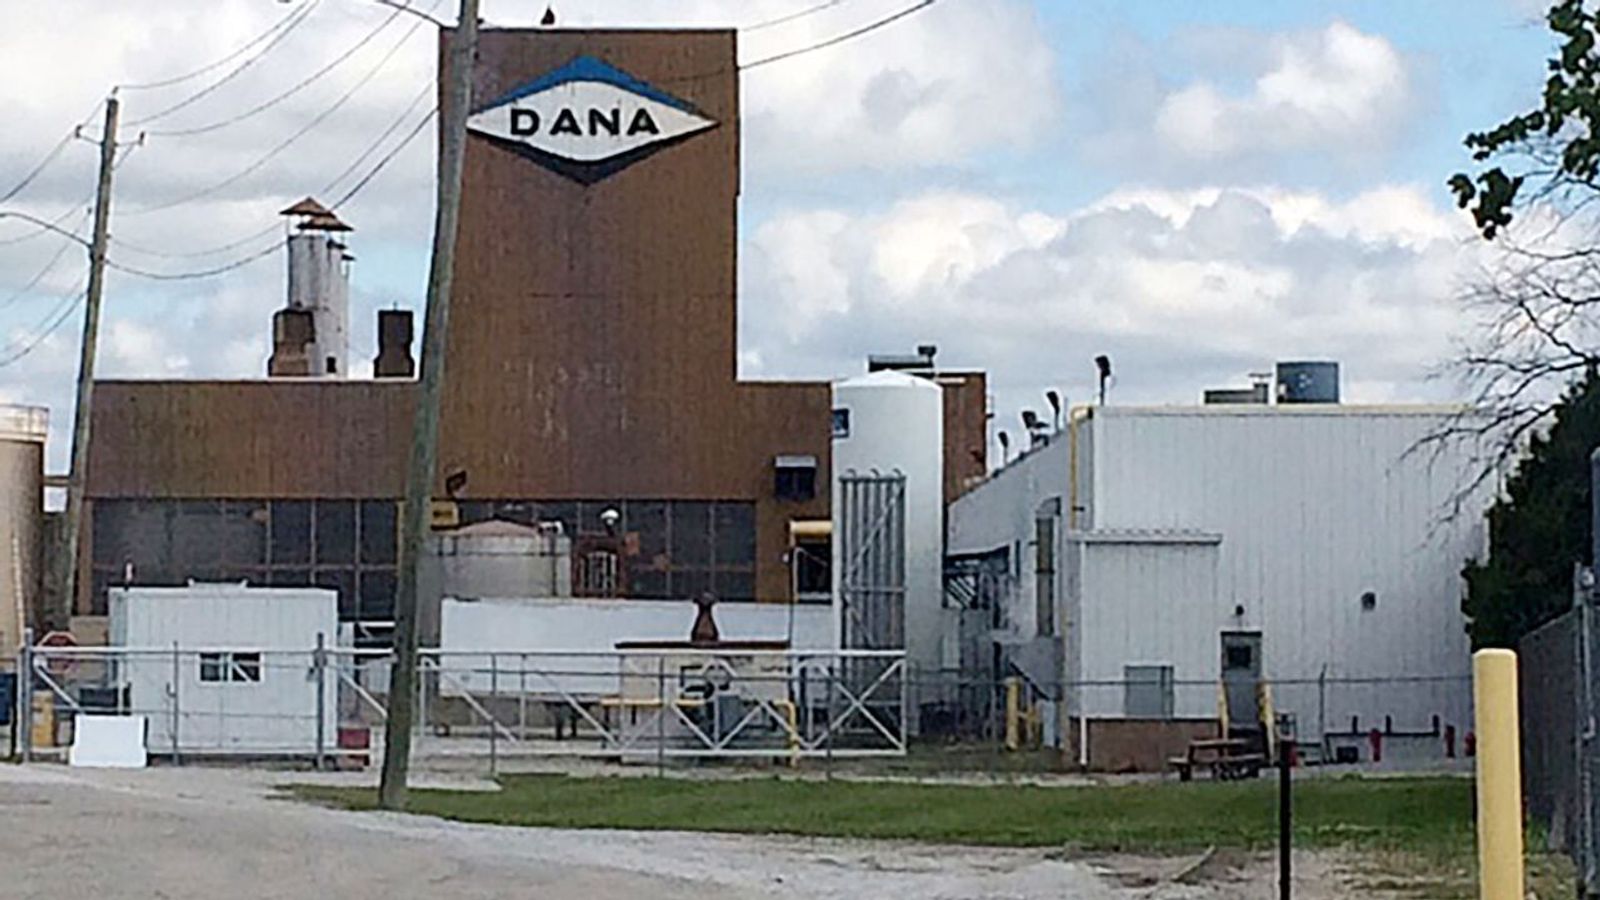 Arbeiter der Dana Corporation mussten nach einem nahezu katastrophalen Ausfall des Wassersystems in Pottstown, Pennsylvania, weiterarbeiten